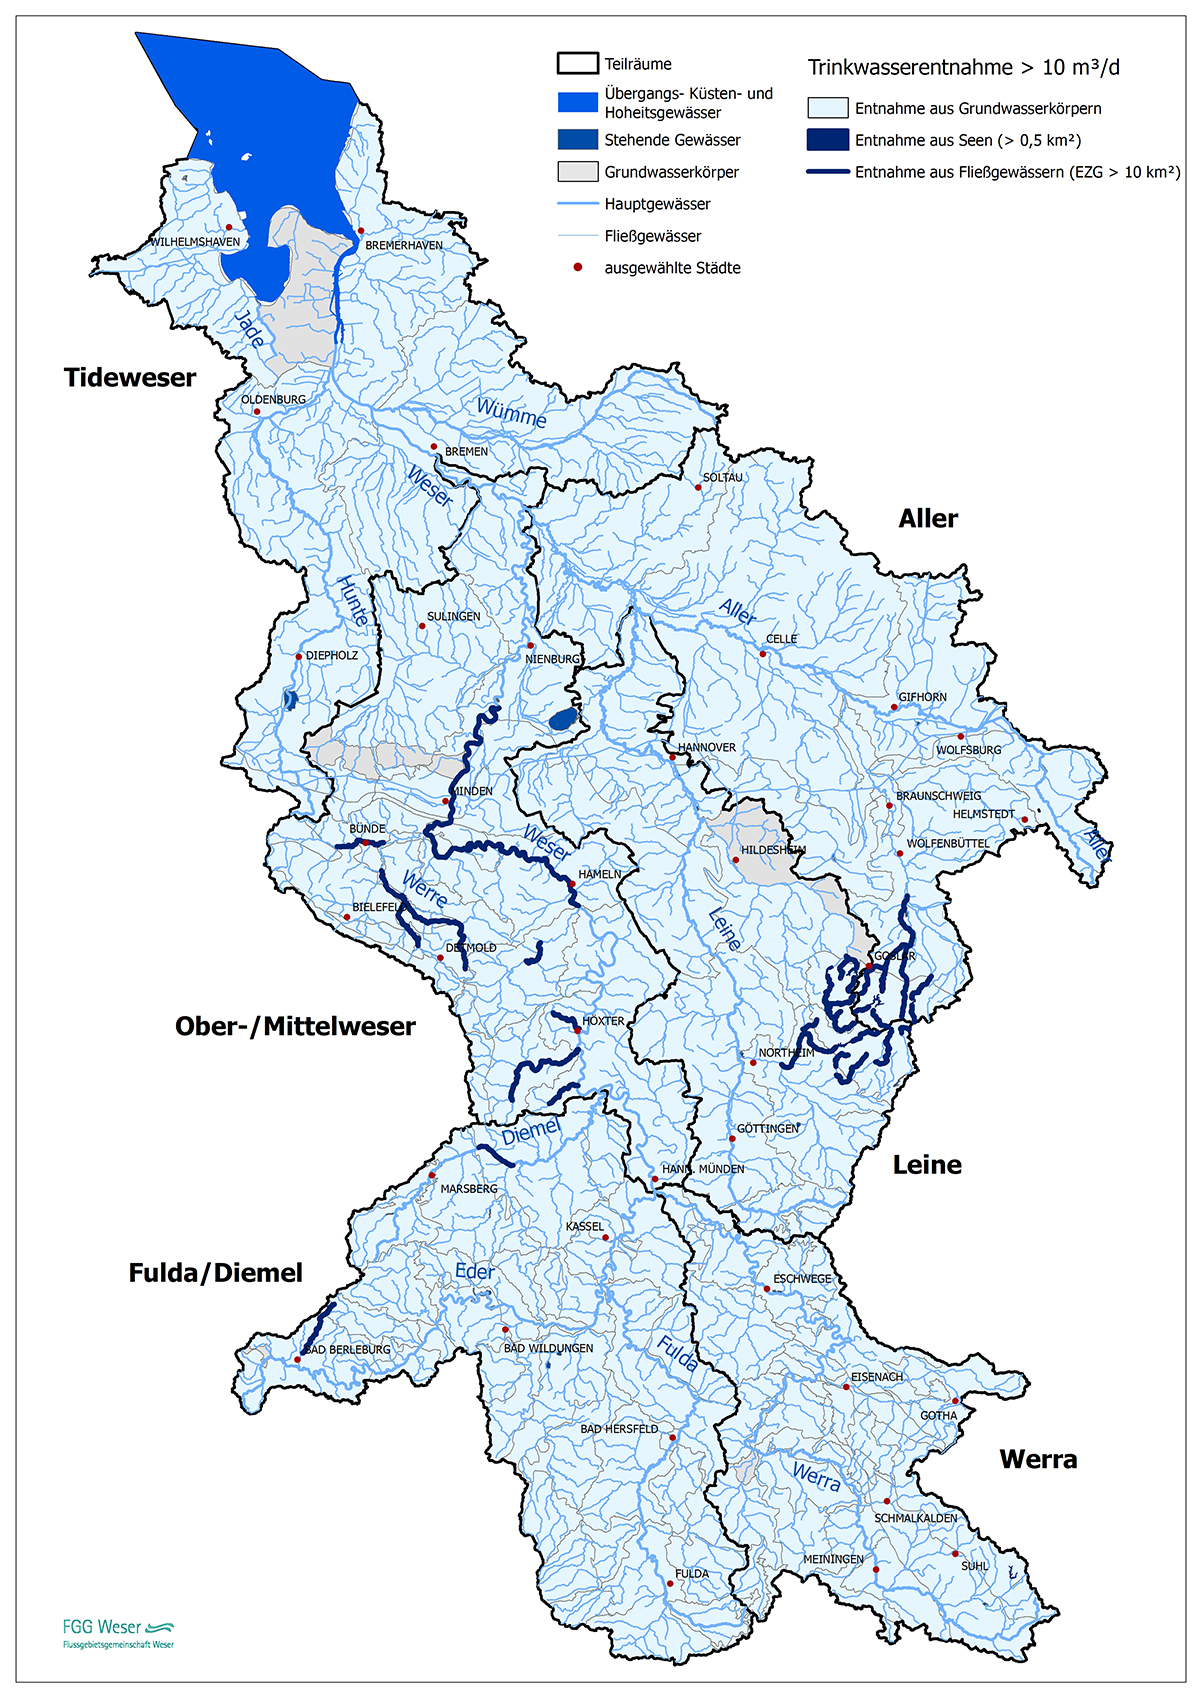 Wasserentnahmen für die Trinkwasserversorgung (FGG Weser, 2016)